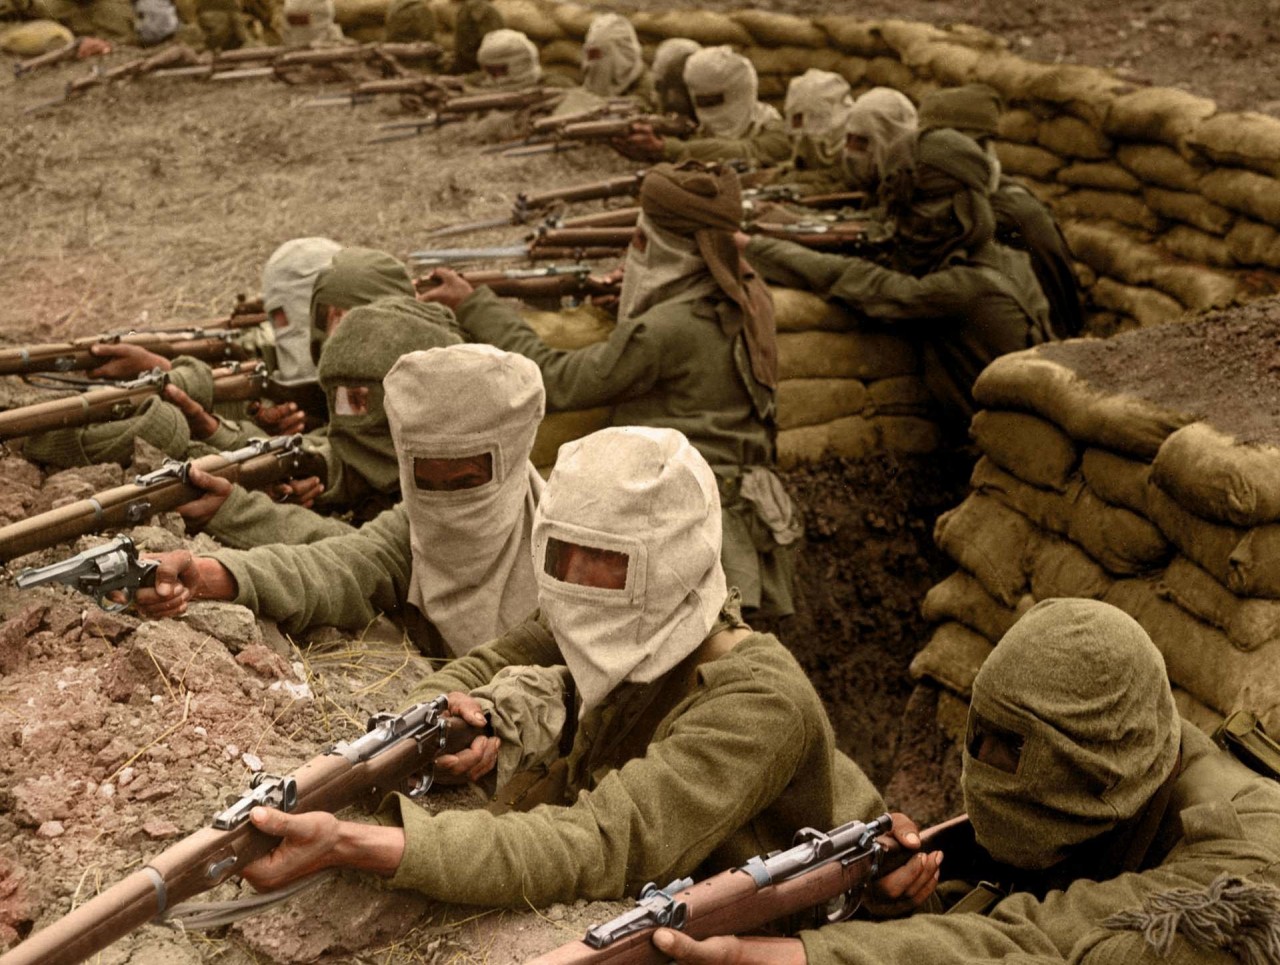 Группа индийских солдат в траншее, 1915 г. На голове у них противогазные маски архивное фото, колоризация, колоризация фотографий, колоризированные снимки, первая мировая, первая мировая война, фото войны